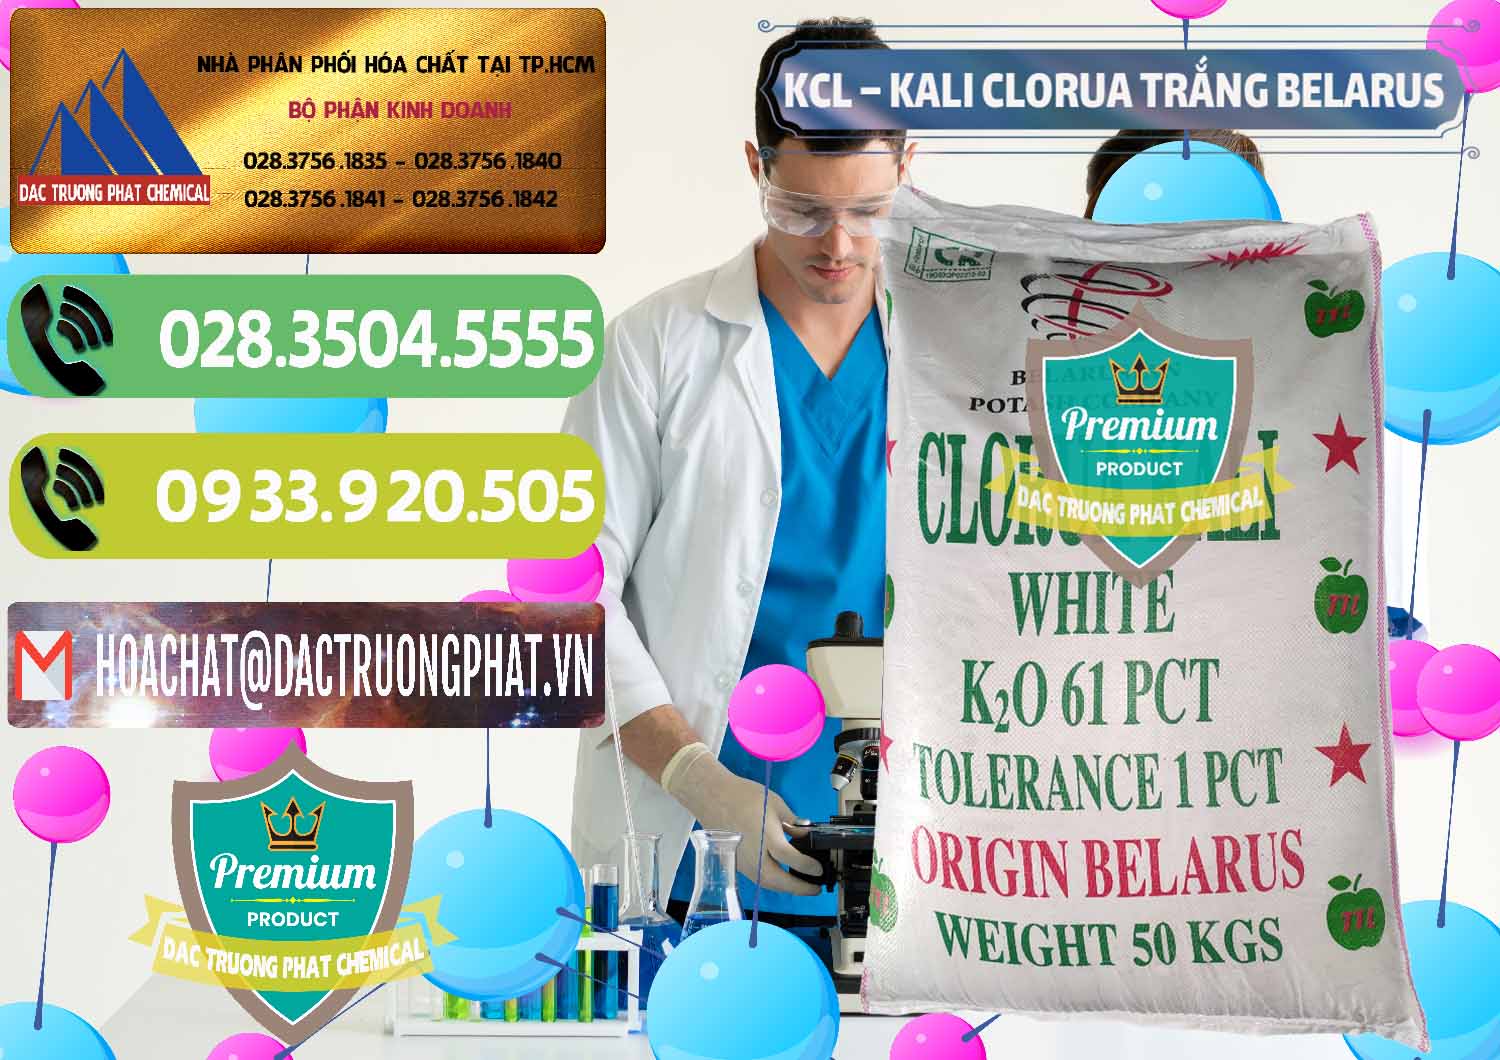 Nơi bán và cung ứng KCL – Kali Clorua Trắng Belarus - 0085 - Chuyên bán & cung cấp hóa chất tại TP.HCM - hoachatmientay.vn